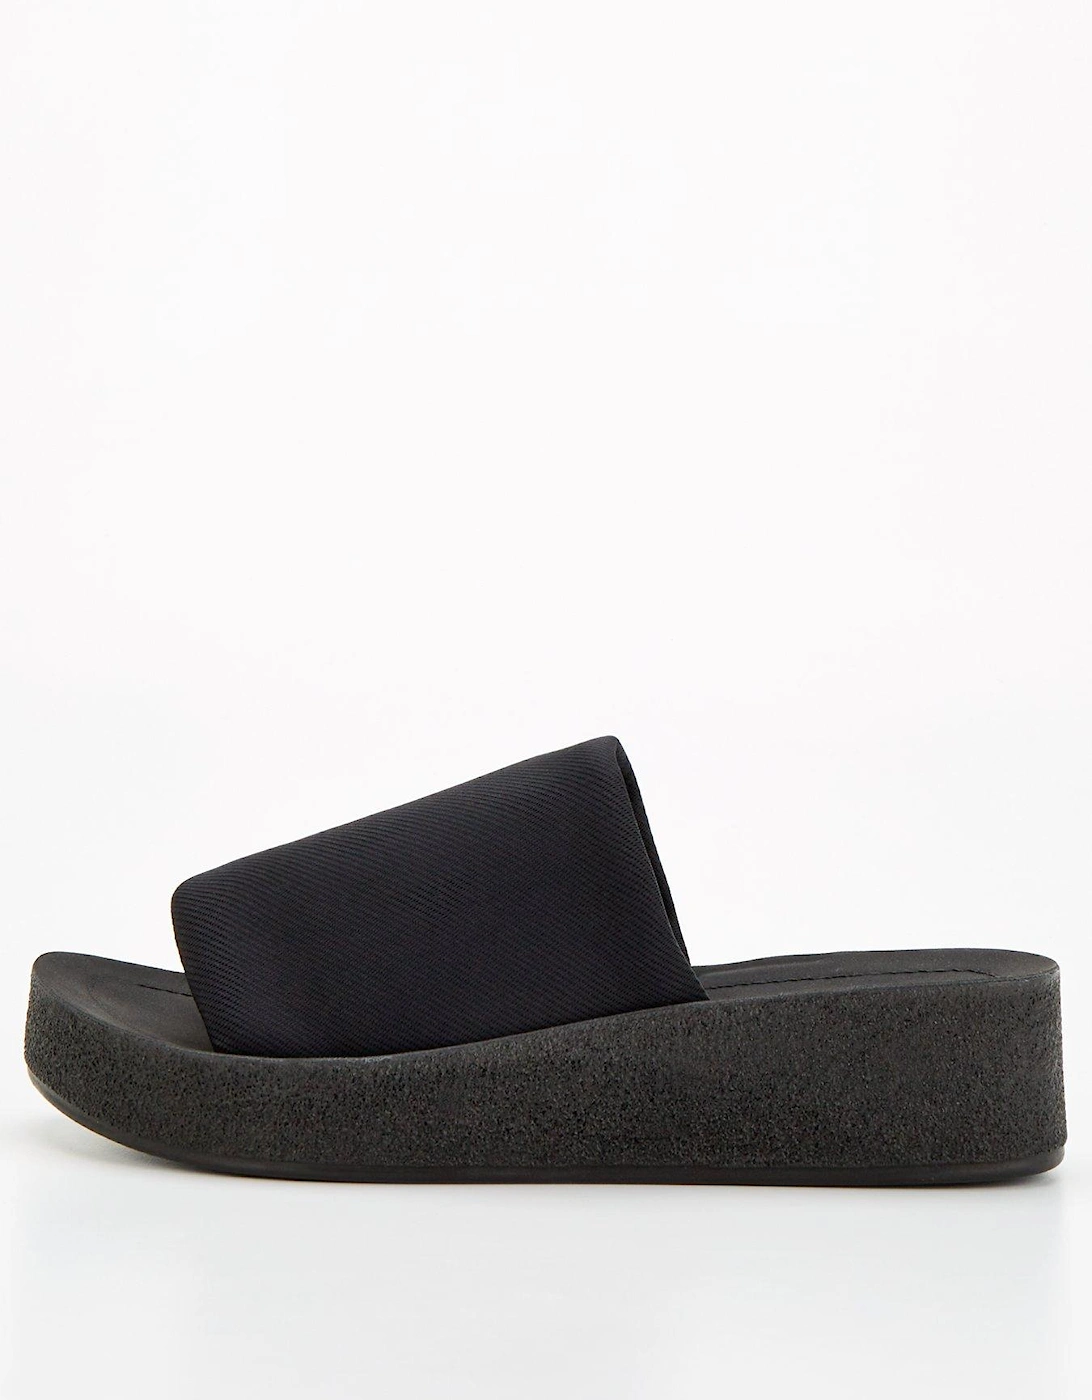 Wide Fit Slip On Comfort Wedge Sandal - Black, 2 of 1